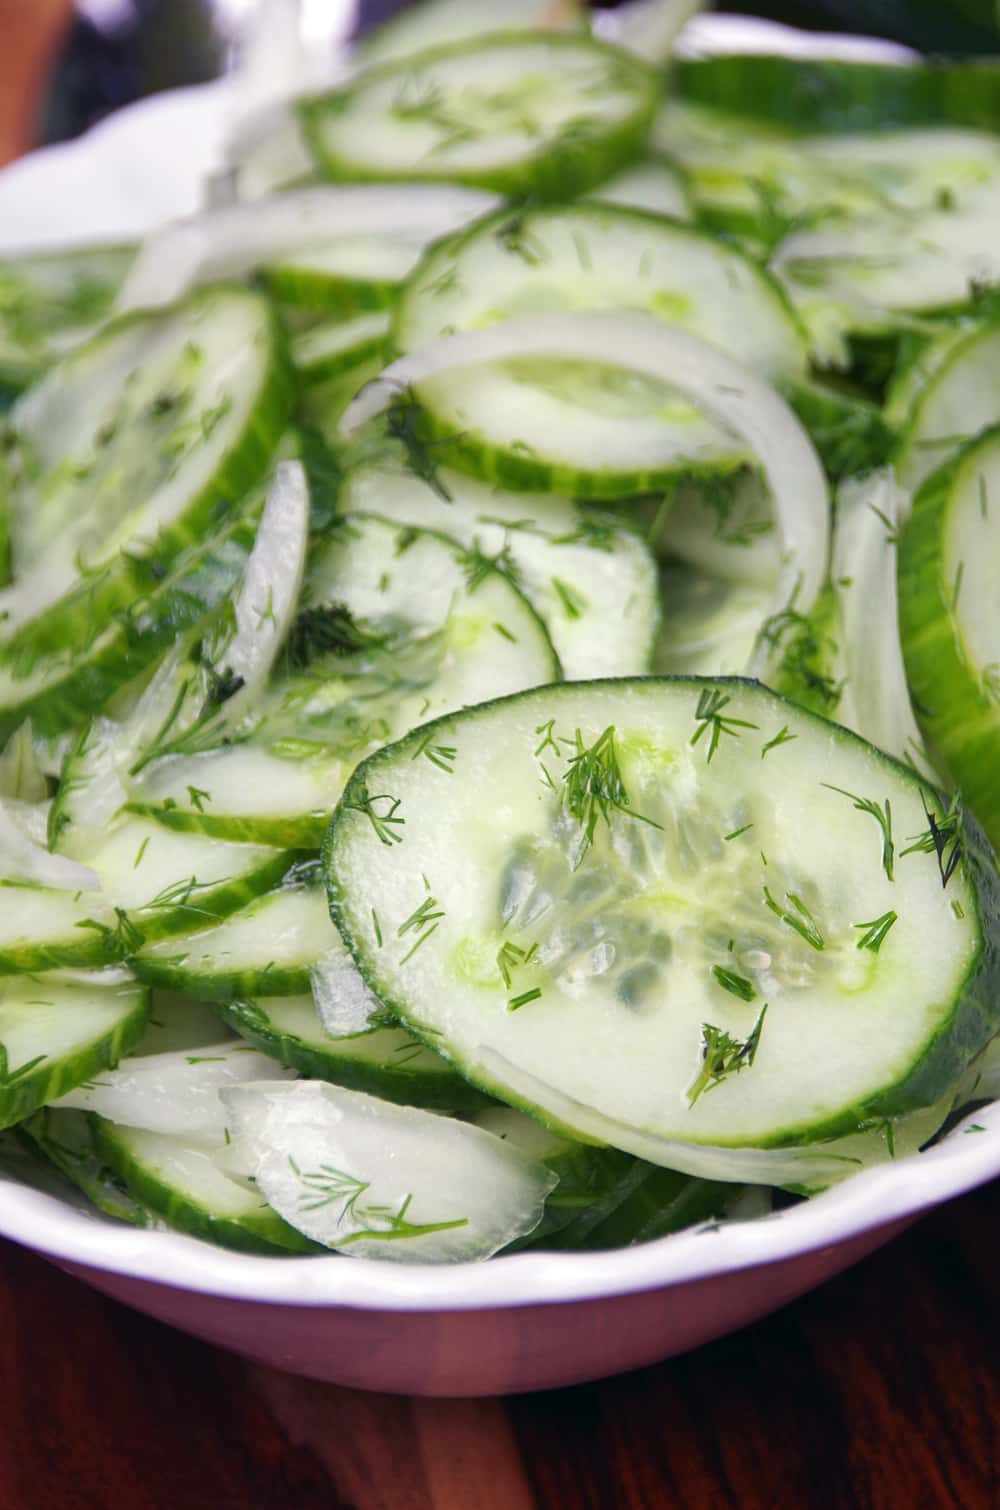 https://www.turningclockback.com/german-cucumber-salad-recipe-gurkensalat/